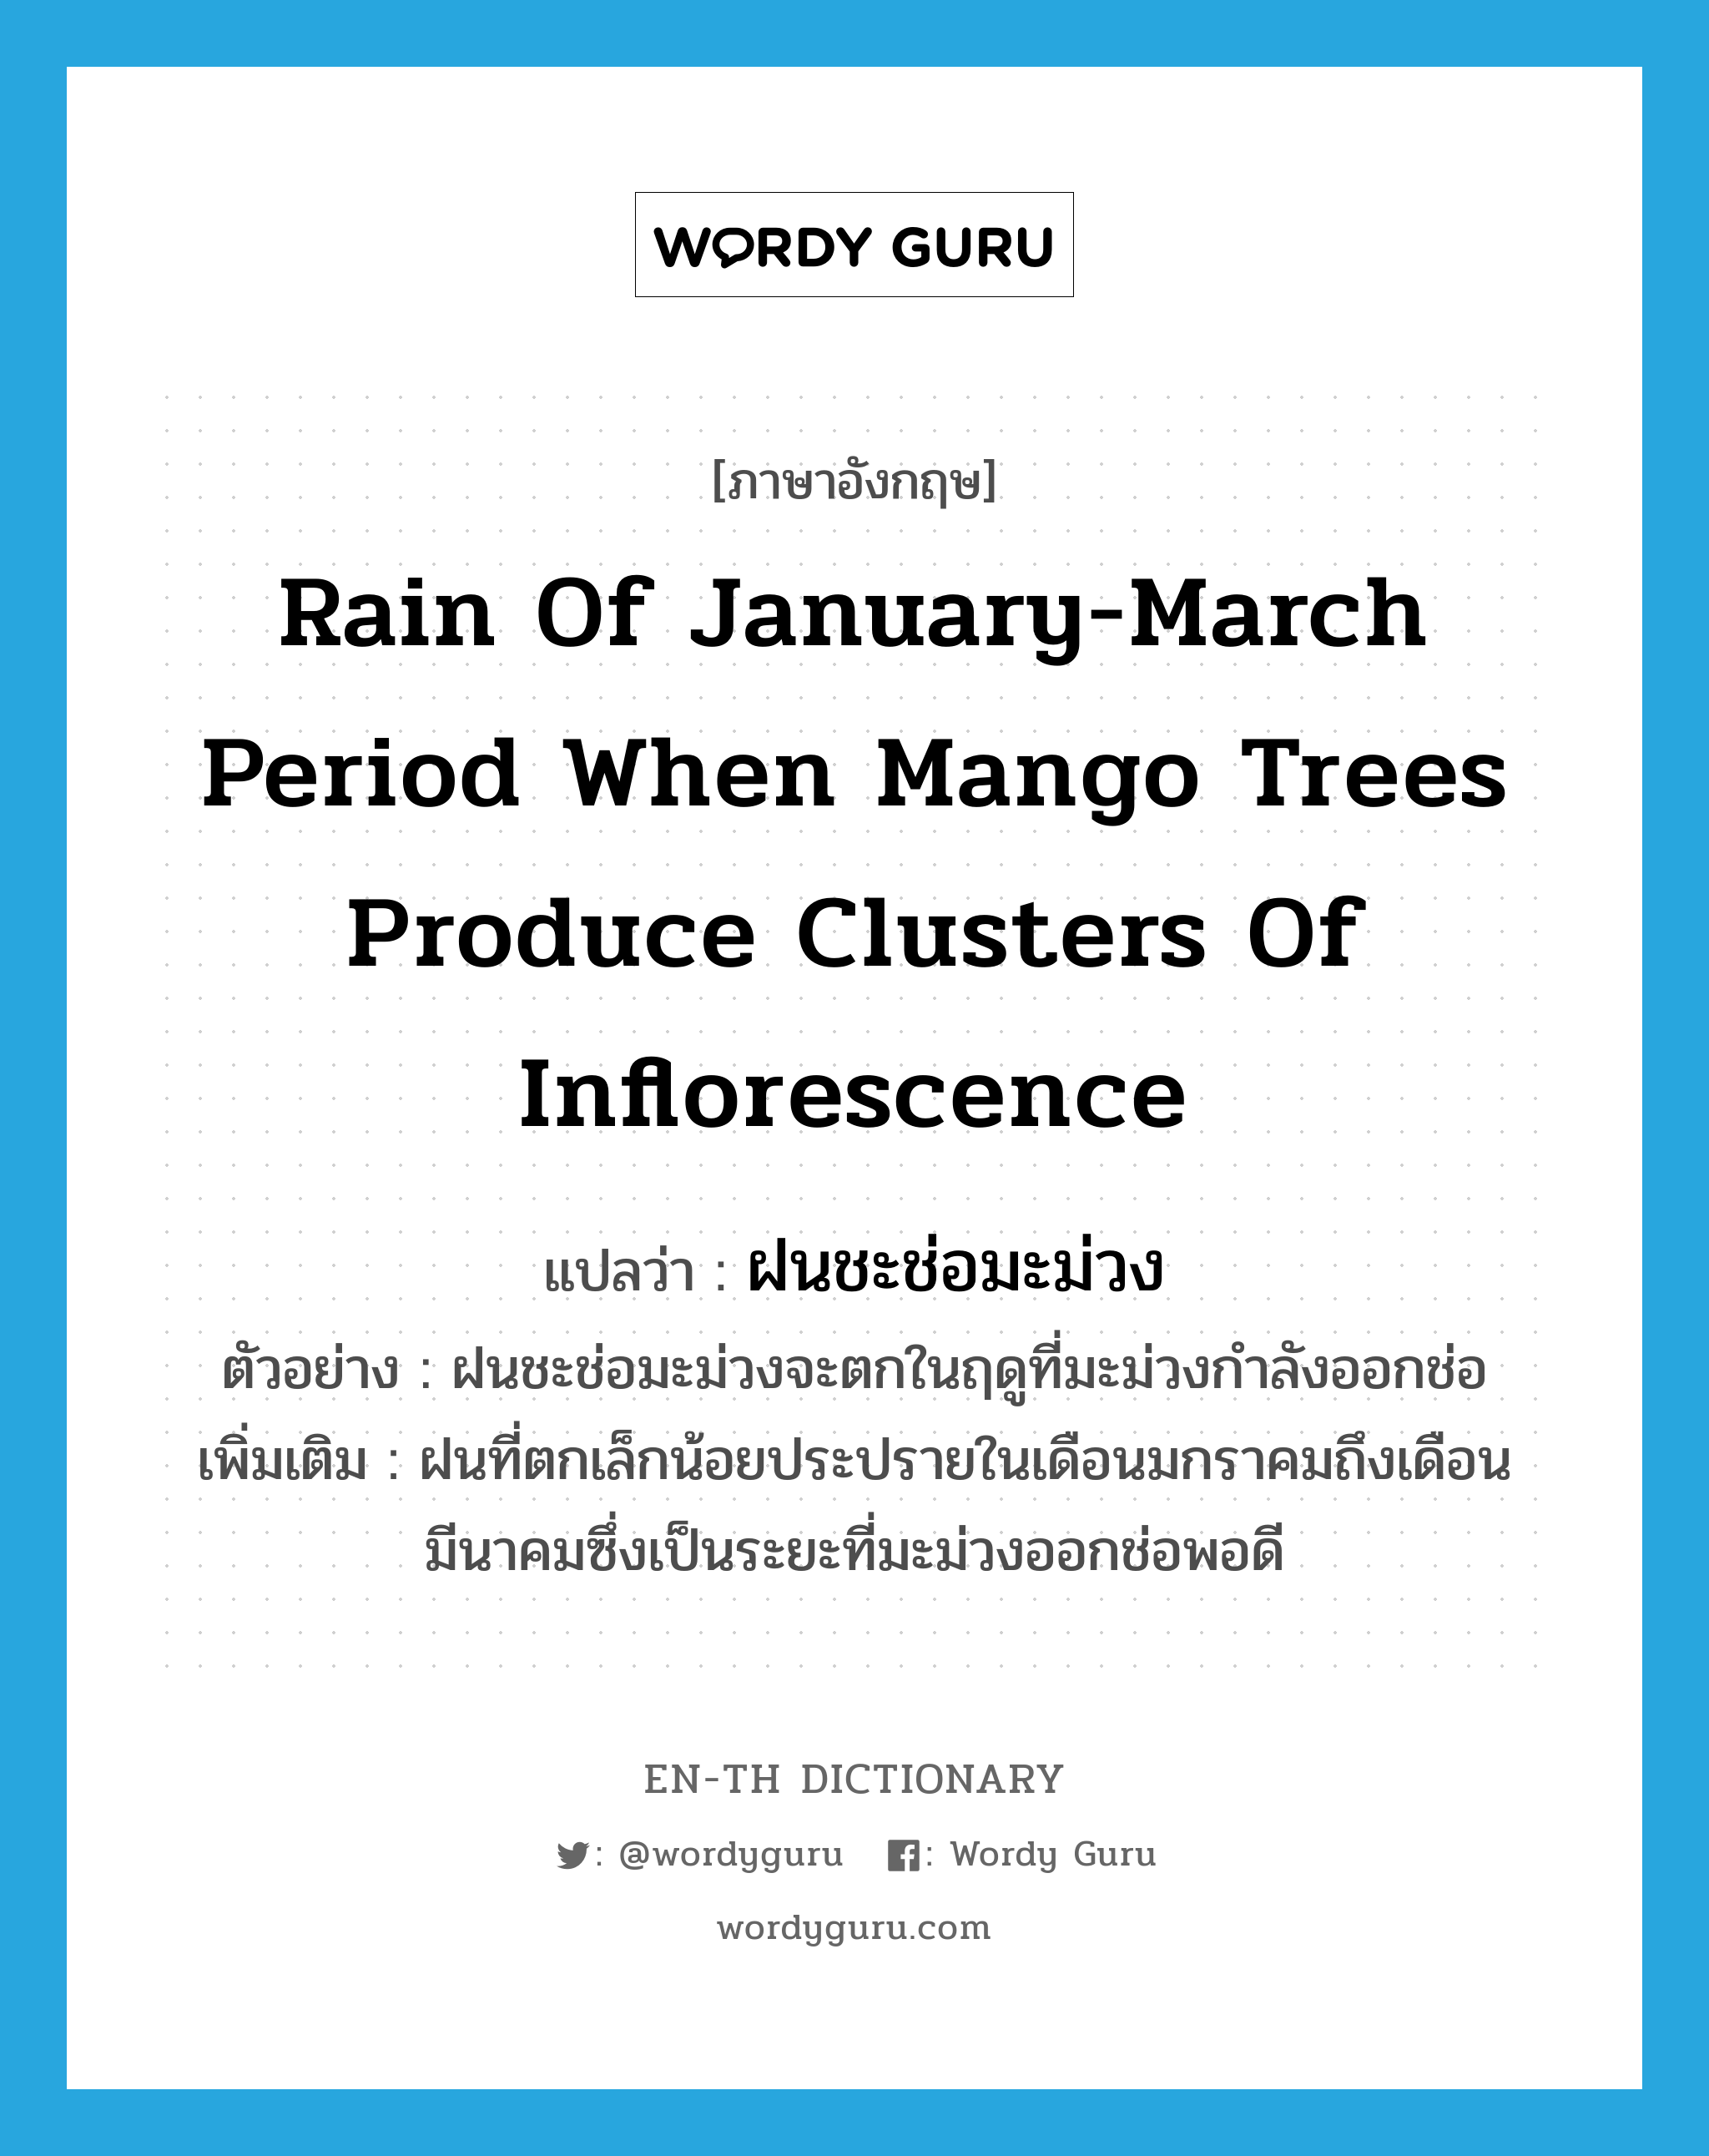 rain of January-March period when mango trees produce clusters of inflorescence แปลว่า?, คำศัพท์ภาษาอังกฤษ rain of January-March period when mango trees produce clusters of inflorescence แปลว่า ฝนชะช่อมะม่วง ประเภท N ตัวอย่าง ฝนชะช่อมะม่วงจะตกในฤดูที่มะม่วงกำลังออกช่อ เพิ่มเติม ฝนที่ตกเล็กน้อยประปรายในเดือนมกราคมถึงเดือนมีนาคมซึ่งเป็นระยะที่มะม่วงออกช่อพอดี หมวด N